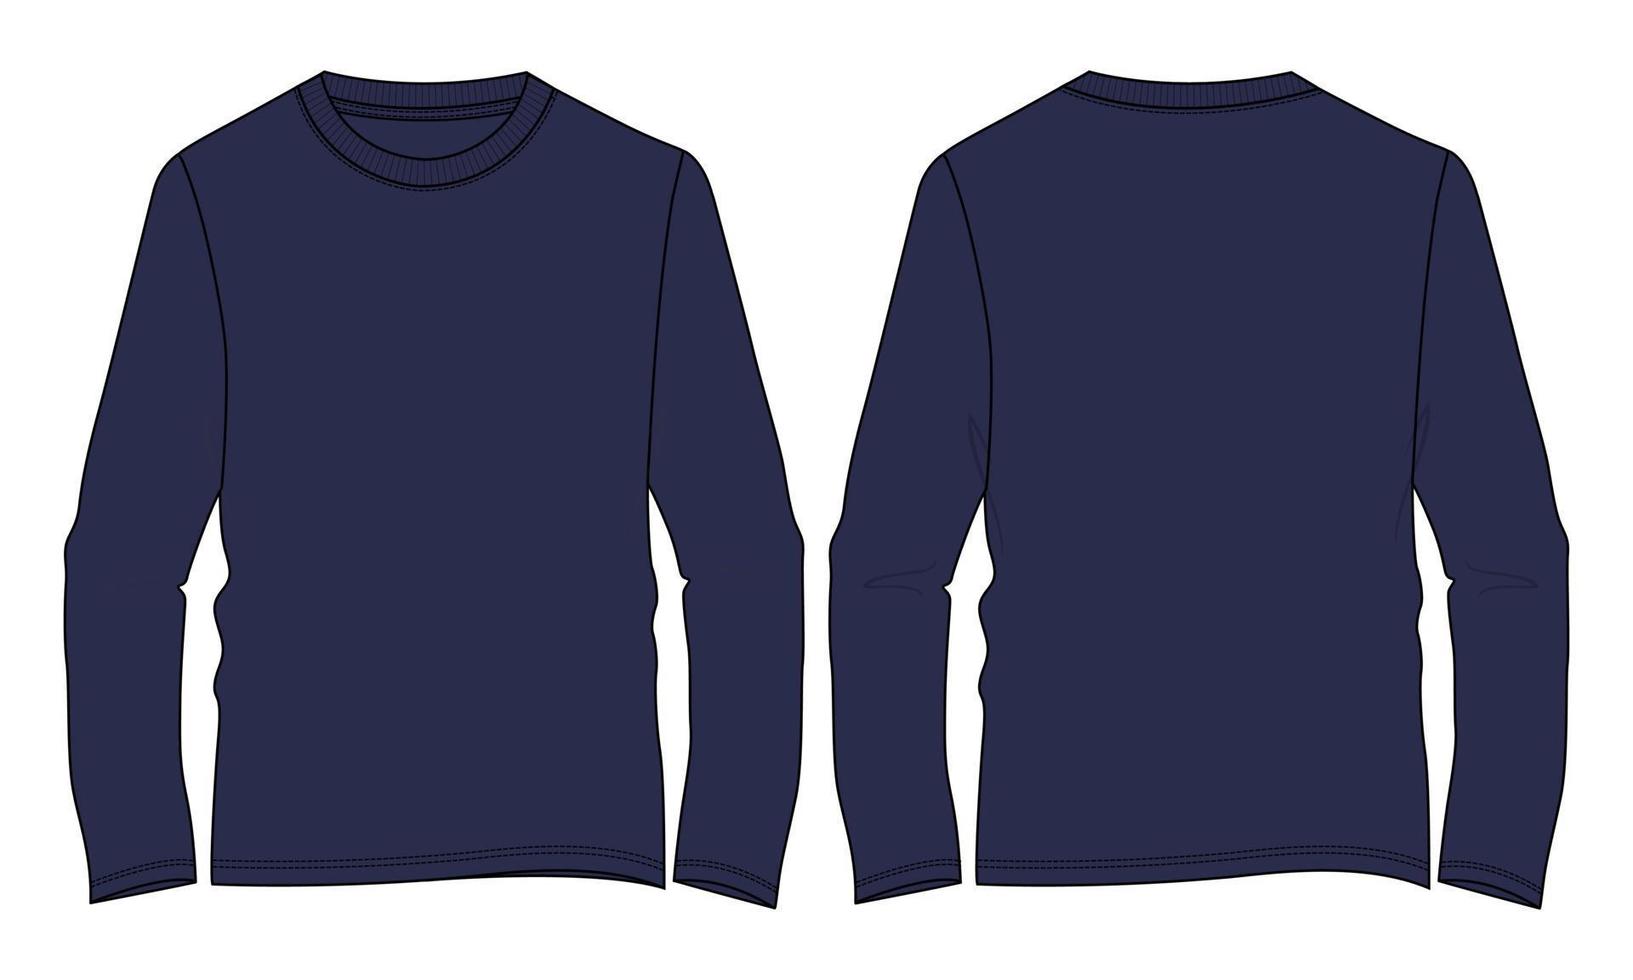 camiseta de manga larga moda técnica boceto plano ilustración vectorial plantilla de color azul marino vector